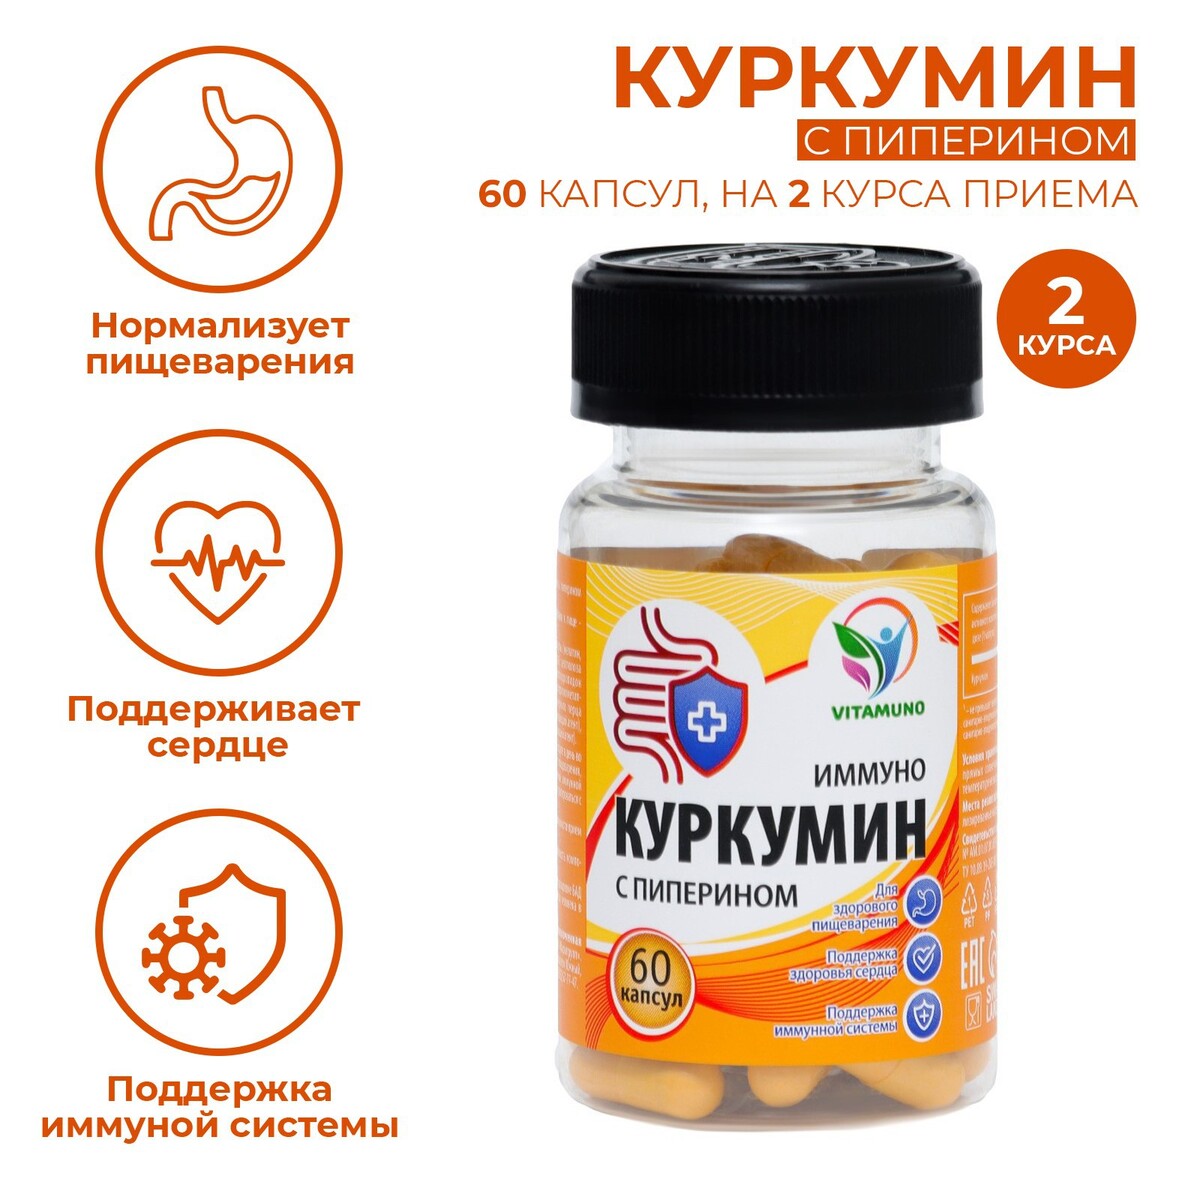 Куркумин с пиперином иммуно, 60 капсул по 0,4 г липосомал куркумин витамин кидс с магнием цинком кальцием 11 витаминов веган 60 капсул